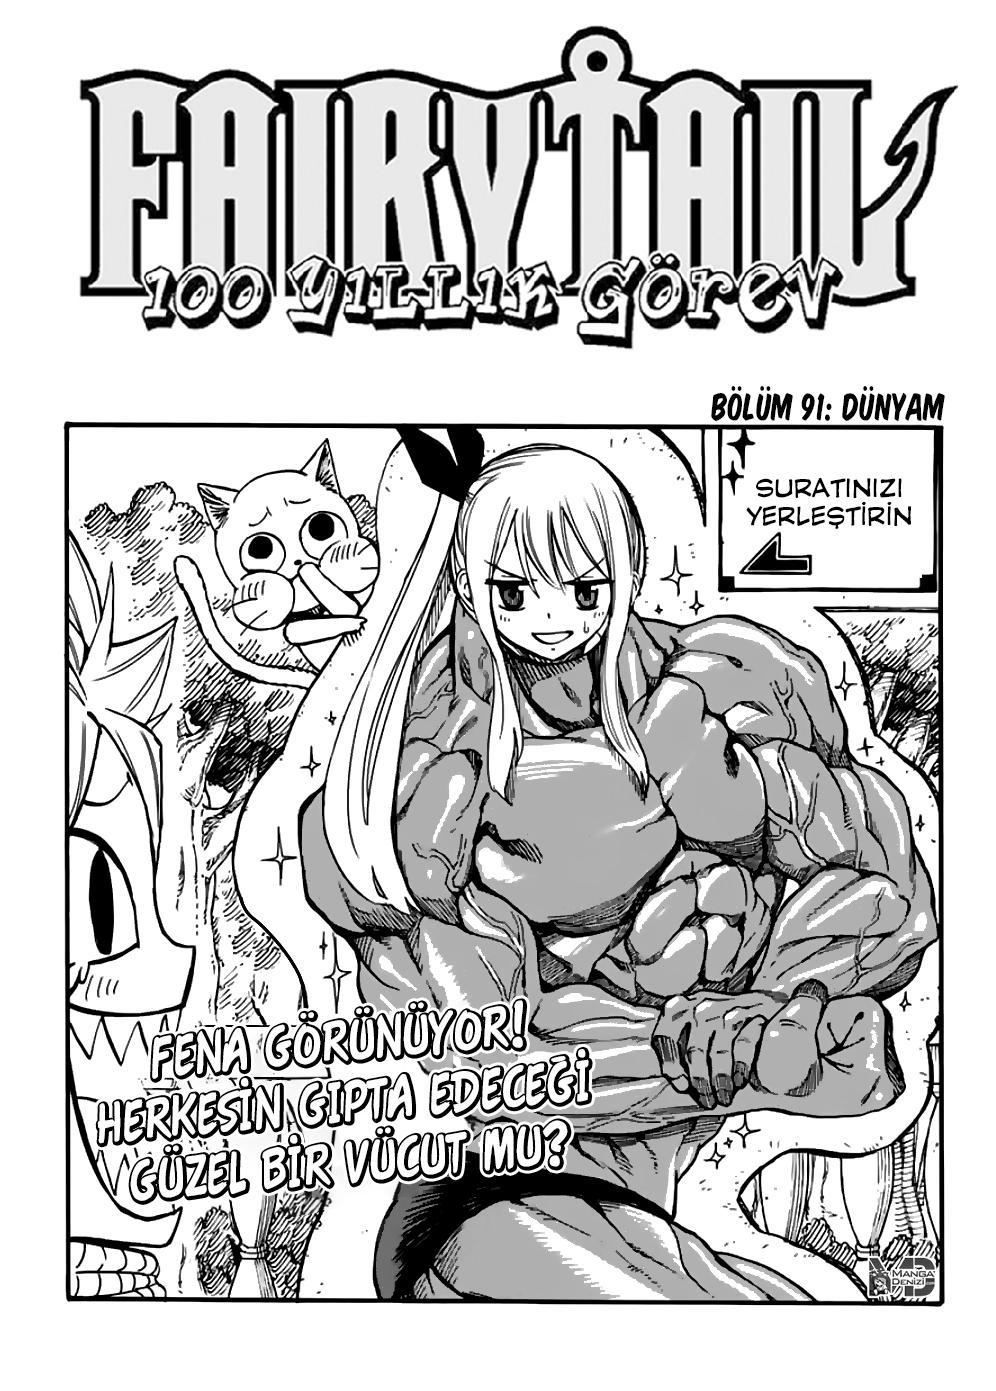 Fairy Tail: 100 Years Quest mangasının 091 bölümünün 2. sayfasını okuyorsunuz.